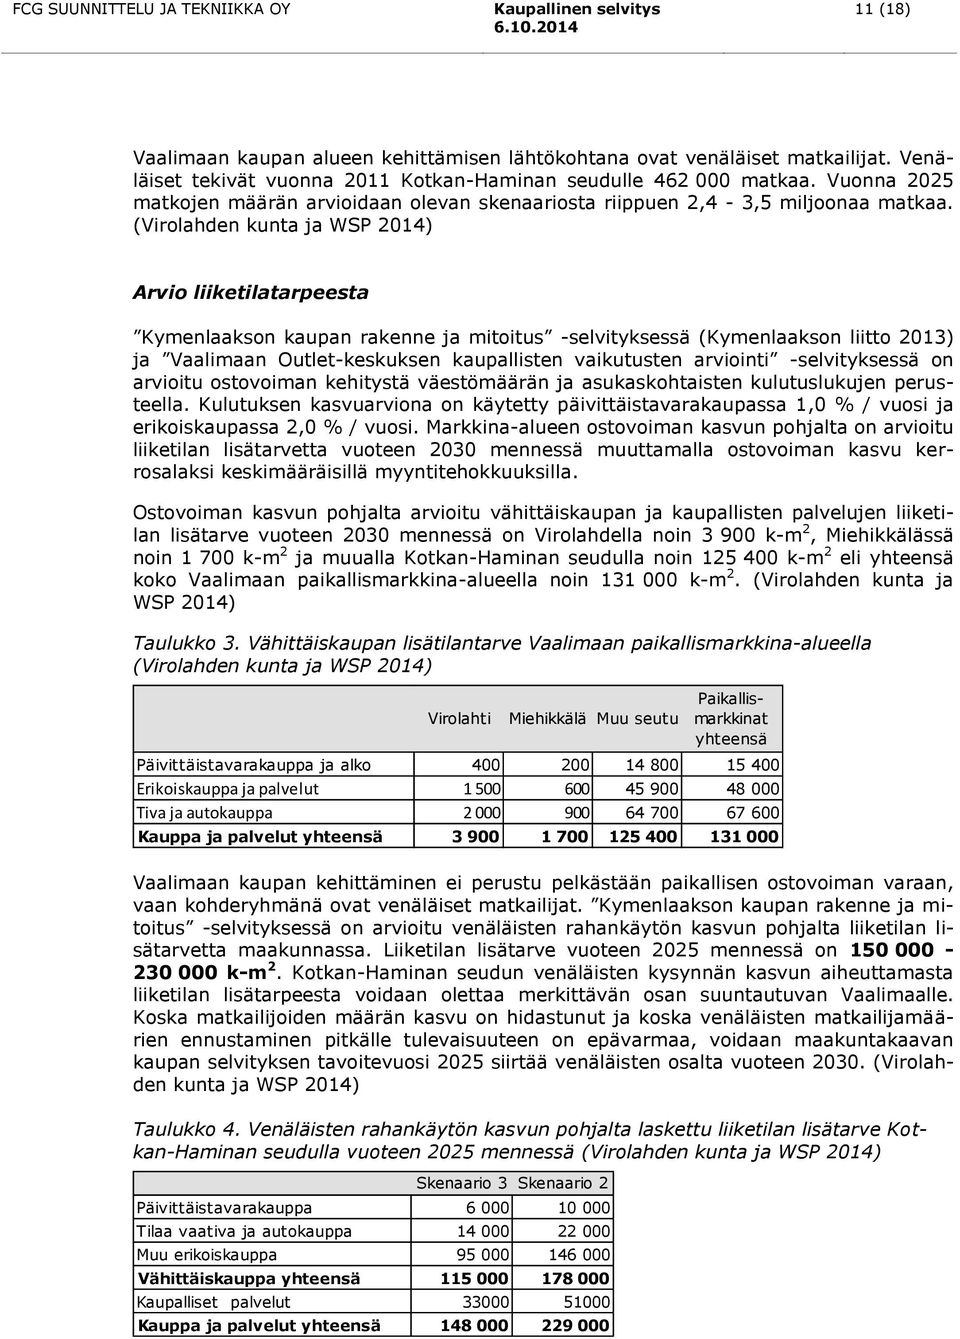 (Virolahden kunta ja WSP 2014) Arvio liiketilatarpeesta Kymenlaakson kaupan rakenne ja mitoitus -selvityksessä (Kymenlaakson liitto 2013) ja Vaalimaan Outlet-keskuksen kaupallisten vaikutusten